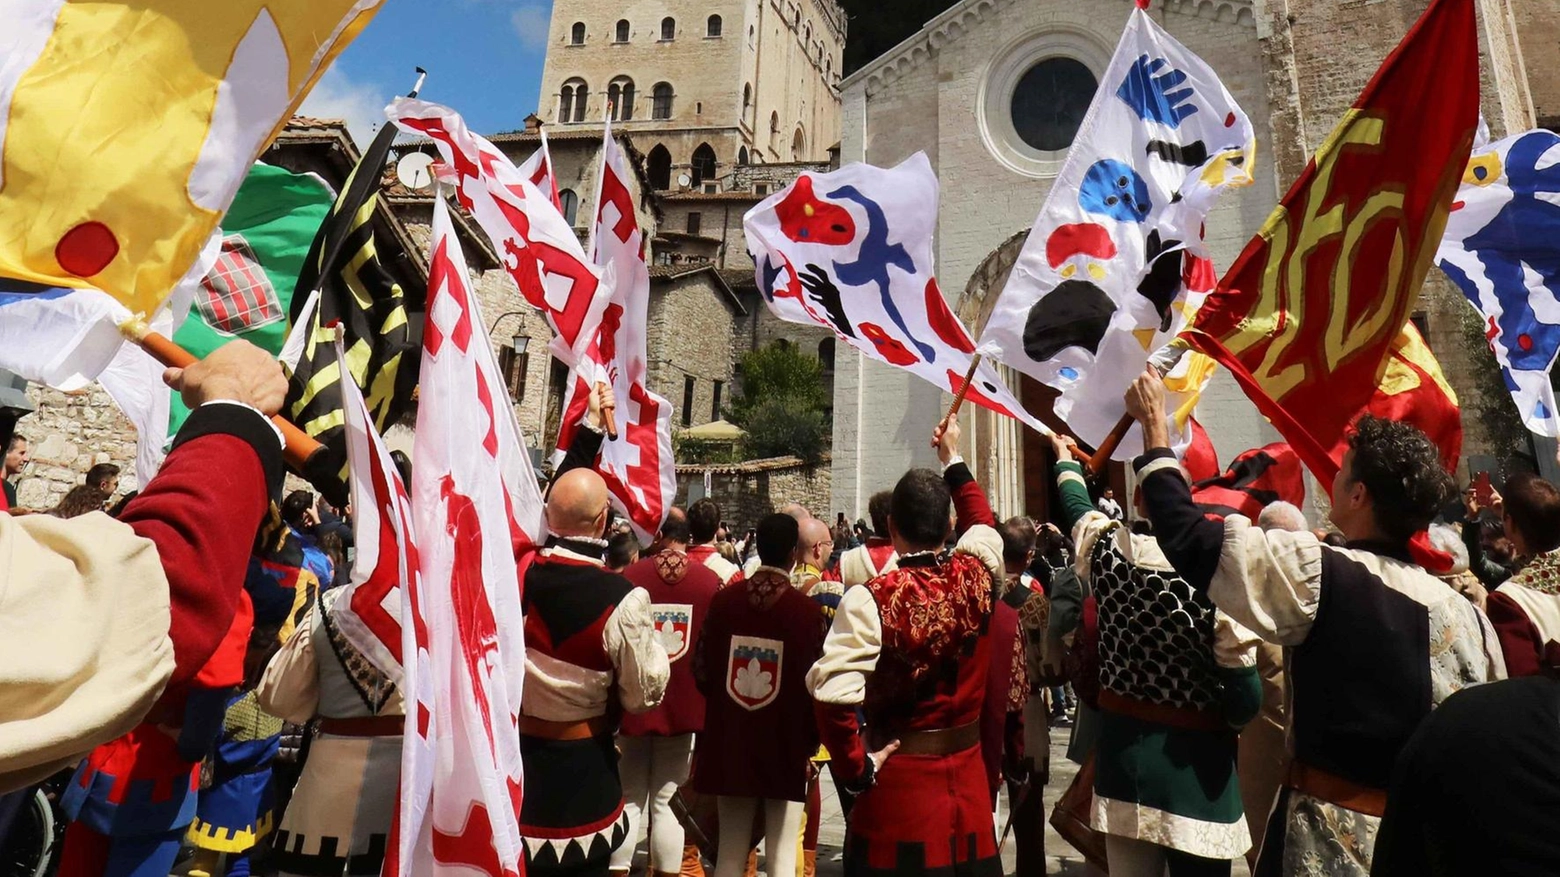 Il Gruppo sbandieratori di Gubbio celebra la tradizione e la spiritualità legate alla Festa dei Ceri, con una esibizione emozionante in piazza San Giovanni. Le bandiere consegnate dai presidenti delle associazioni locali aggiungono colore e significato all'evento.